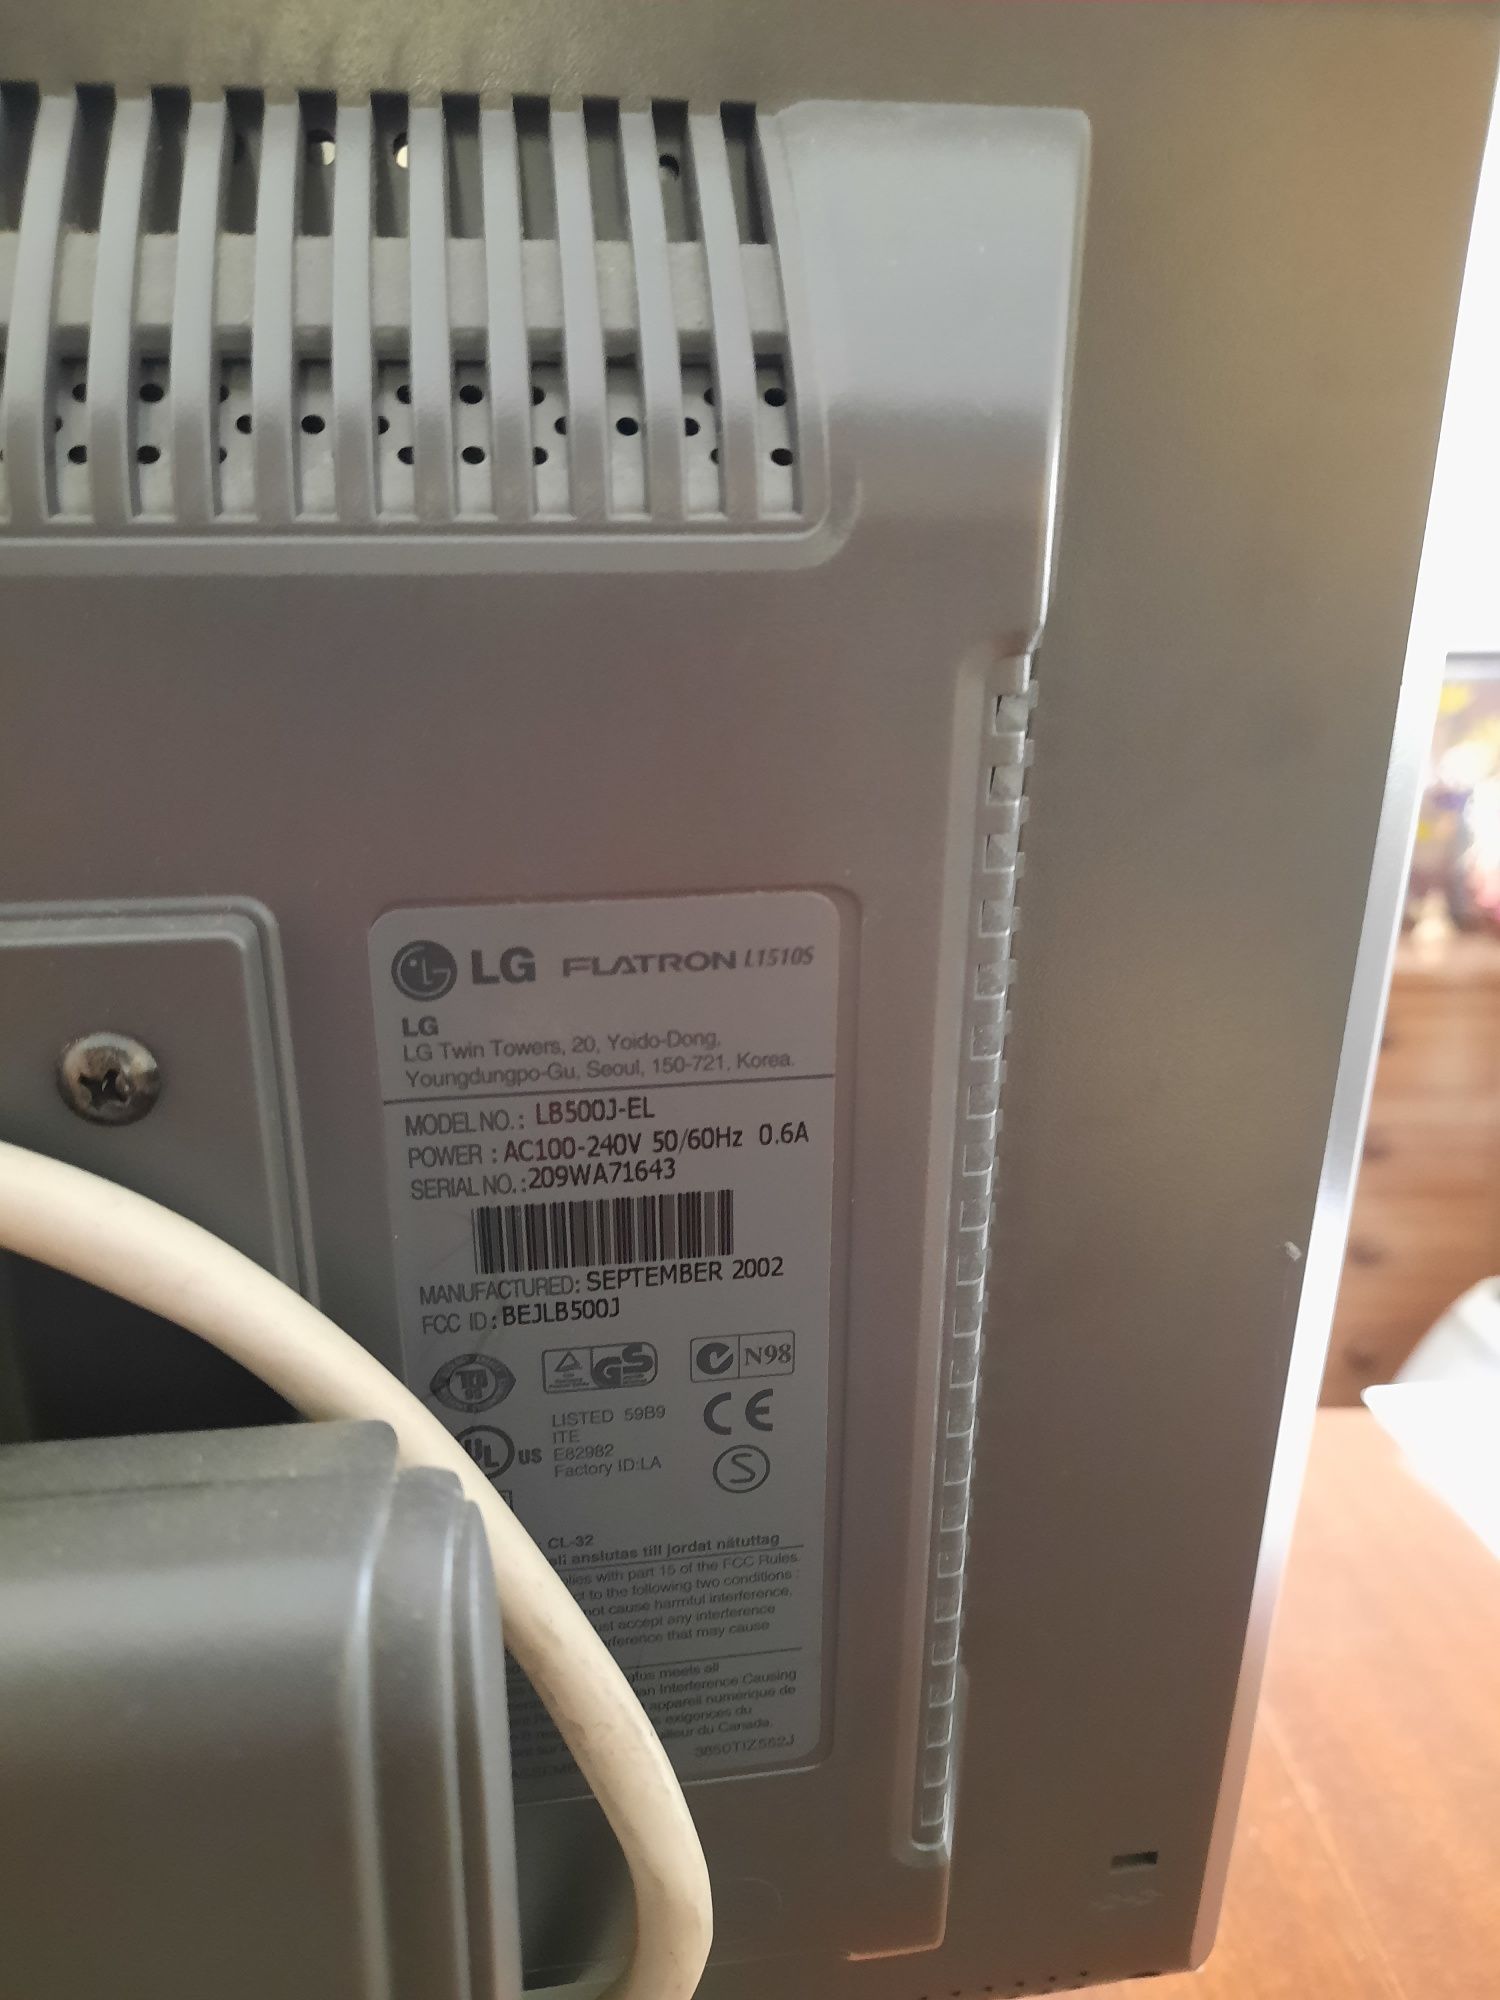 Monitor LG Flatron L1510S